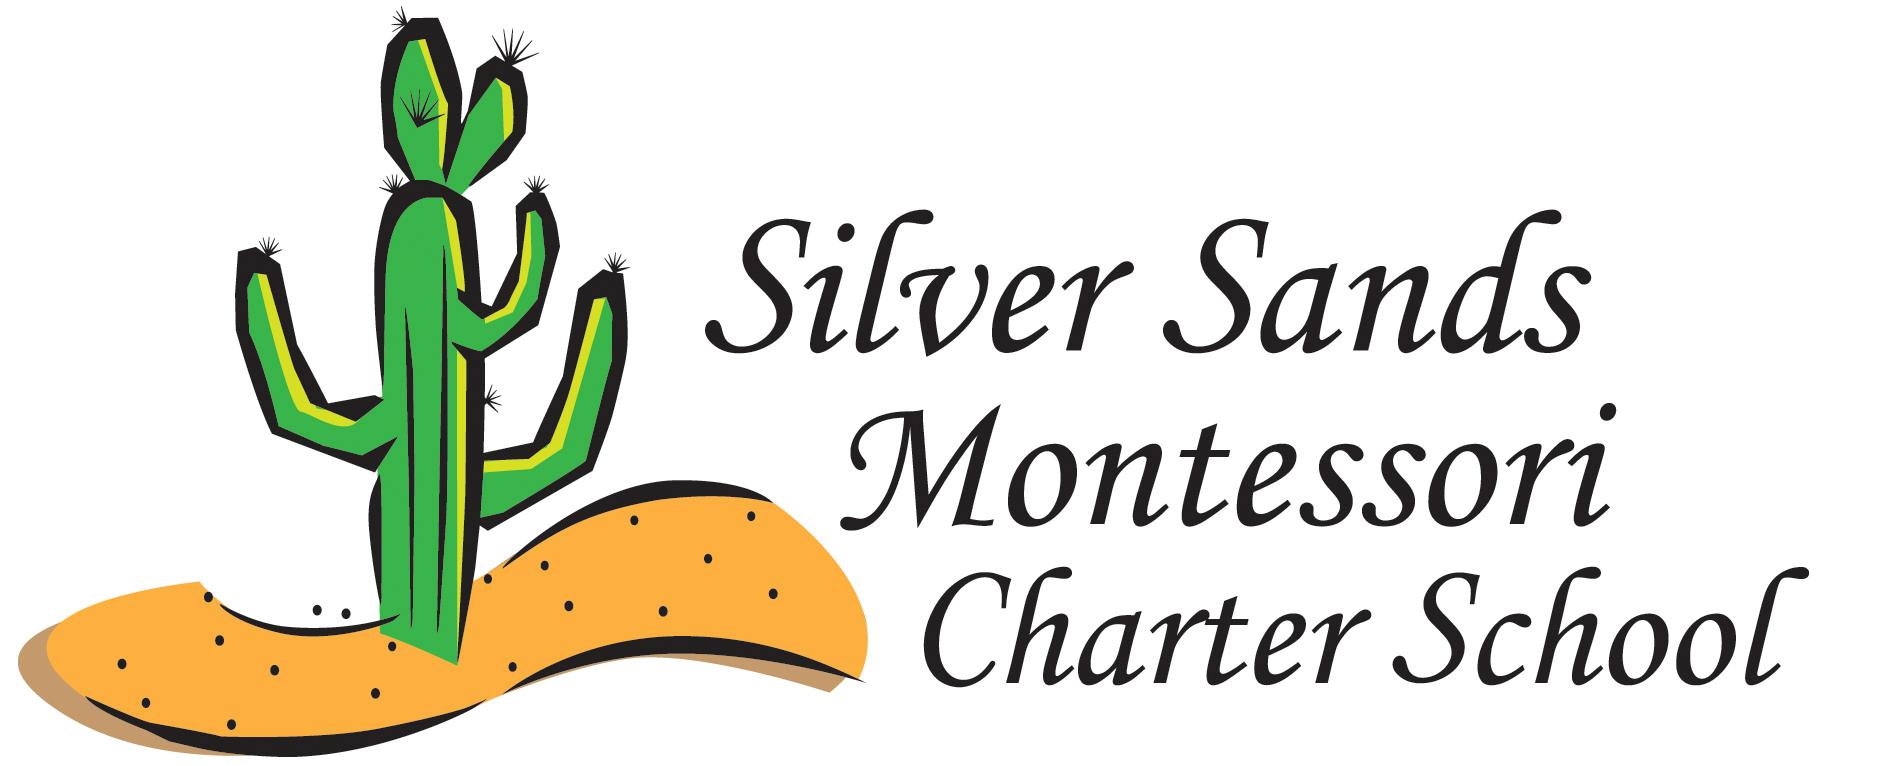 Silver Sands Montessori